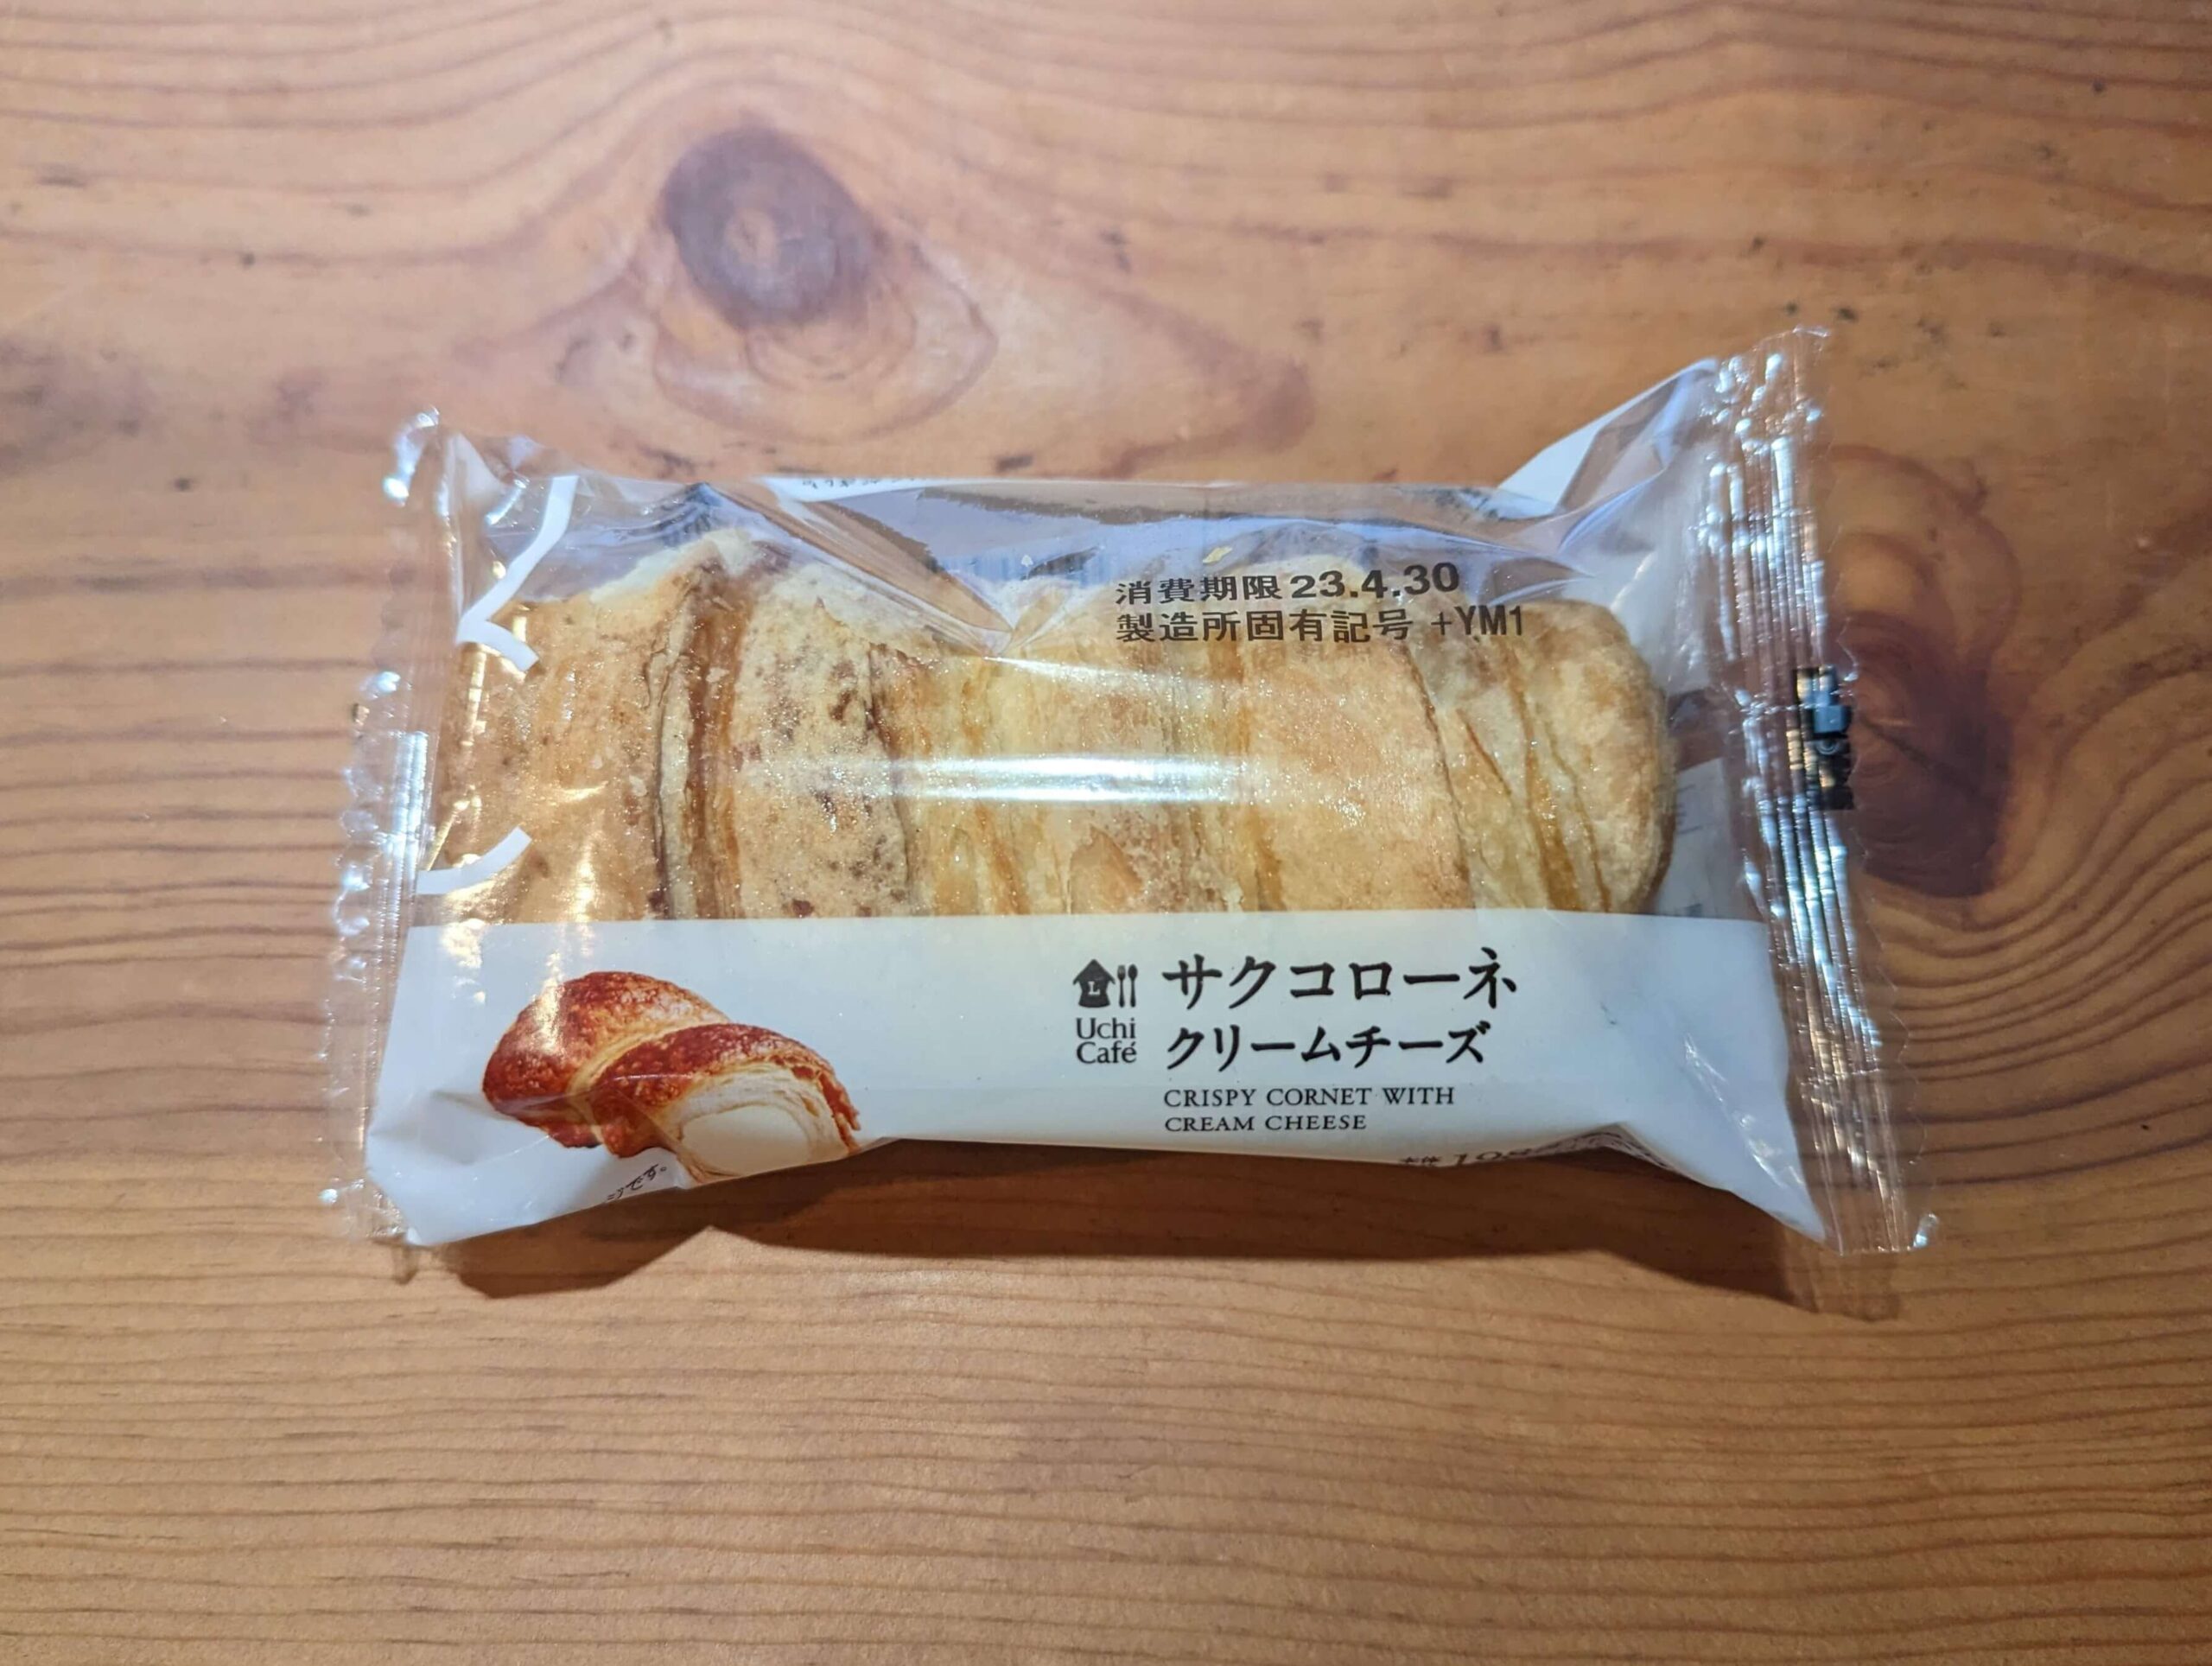 ローソン・サクコローネクリームチーズ (9)